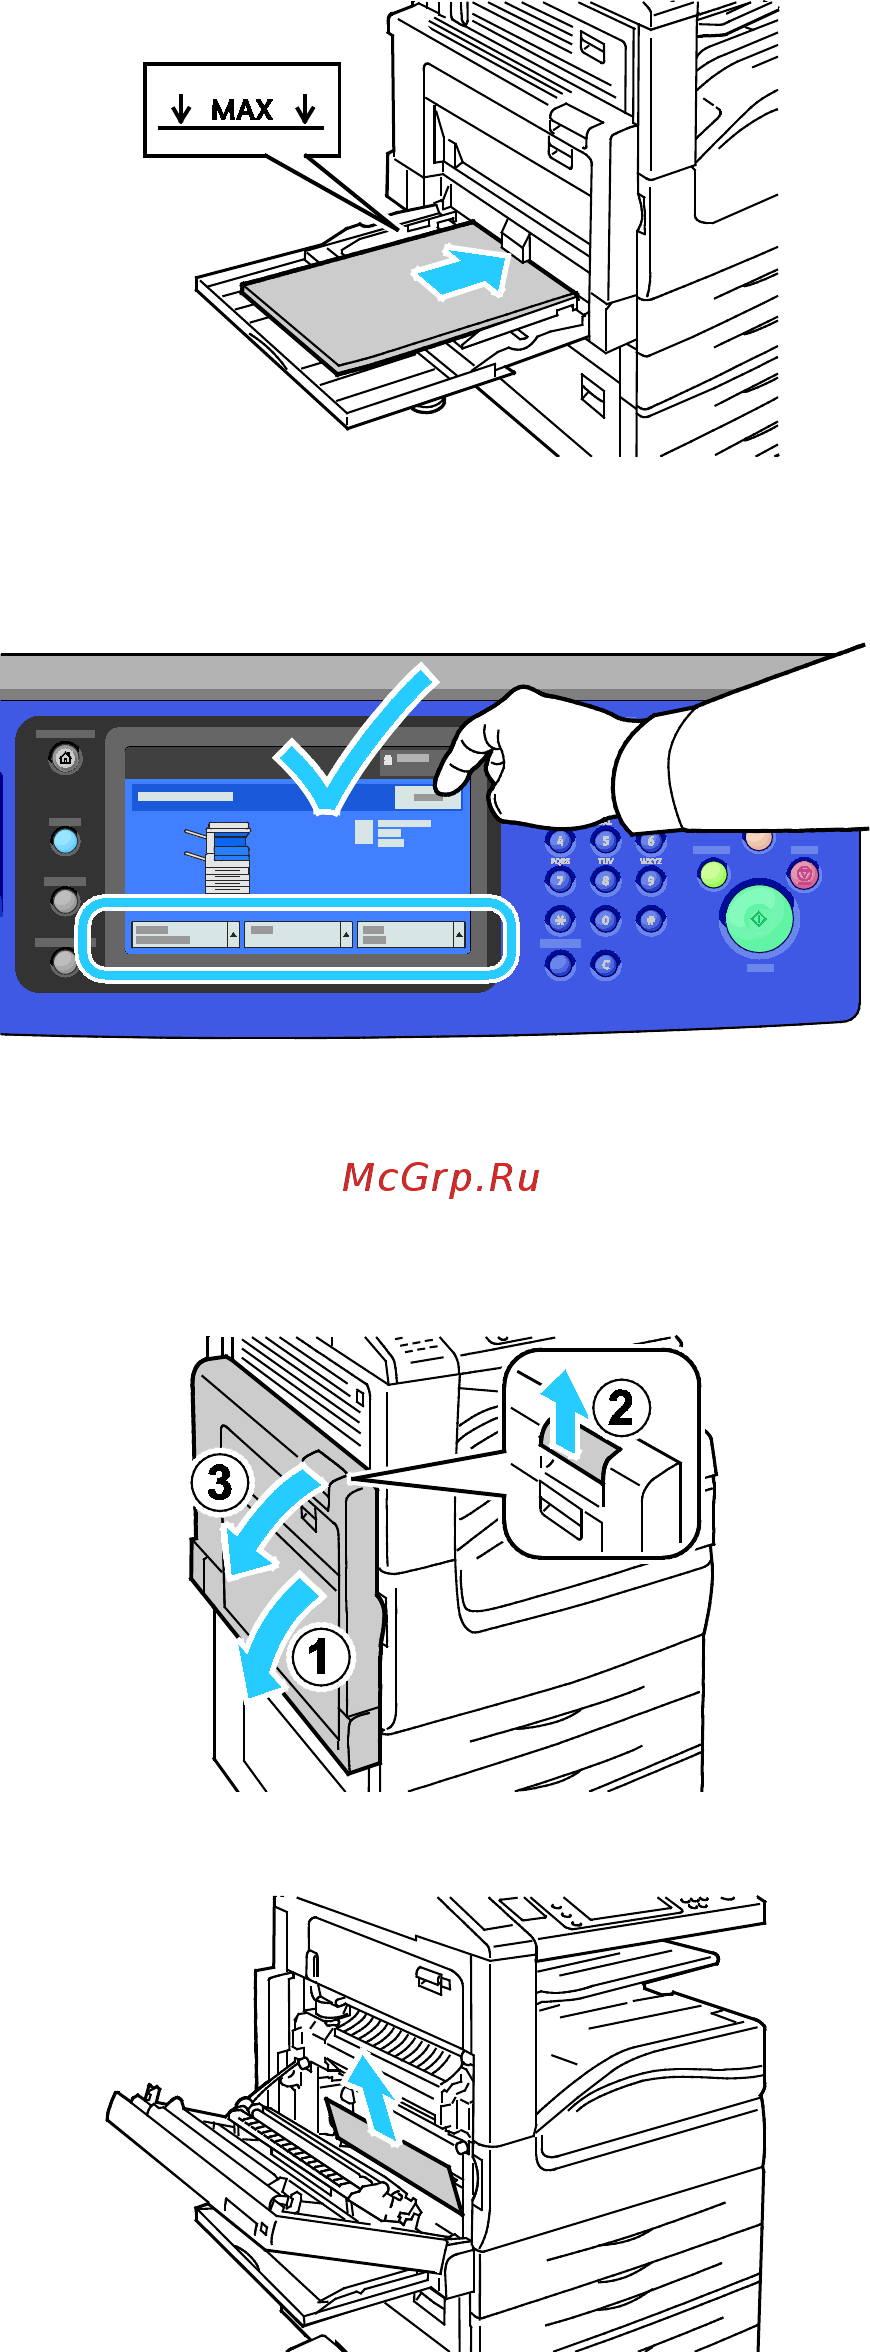 Устраняем коды ошибок принтеров hp: е8, е3, 79, а также ошибка печати